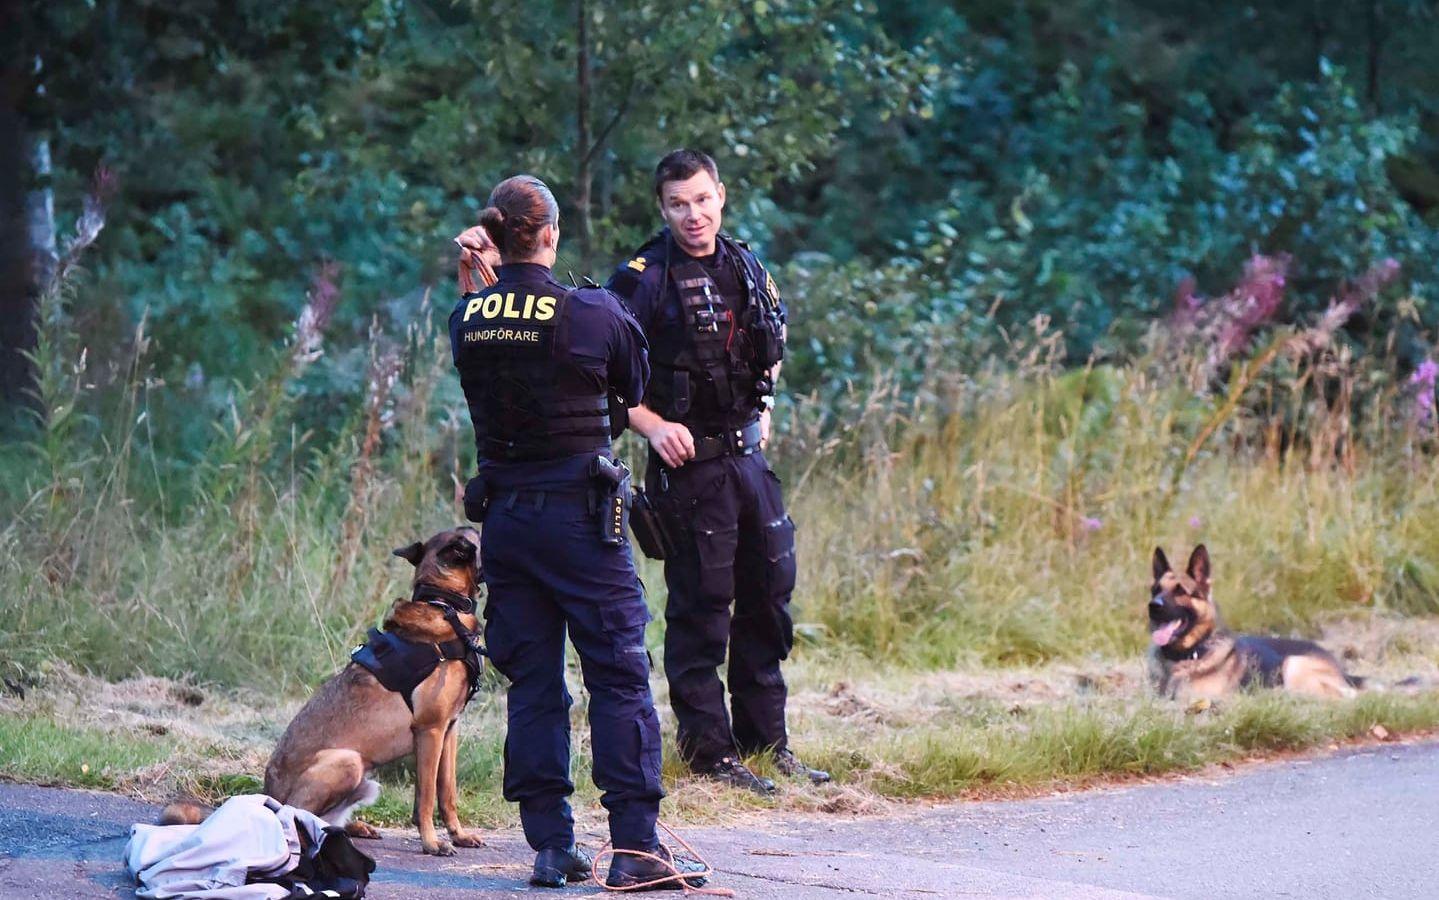 En man i 25-årsåldern sköts till döds i en mindre ort utanför Borås. Ingen gärningsman är gripen för dådet. Bild: Joakim Eriksson / Nyhetsbyrån Agena
